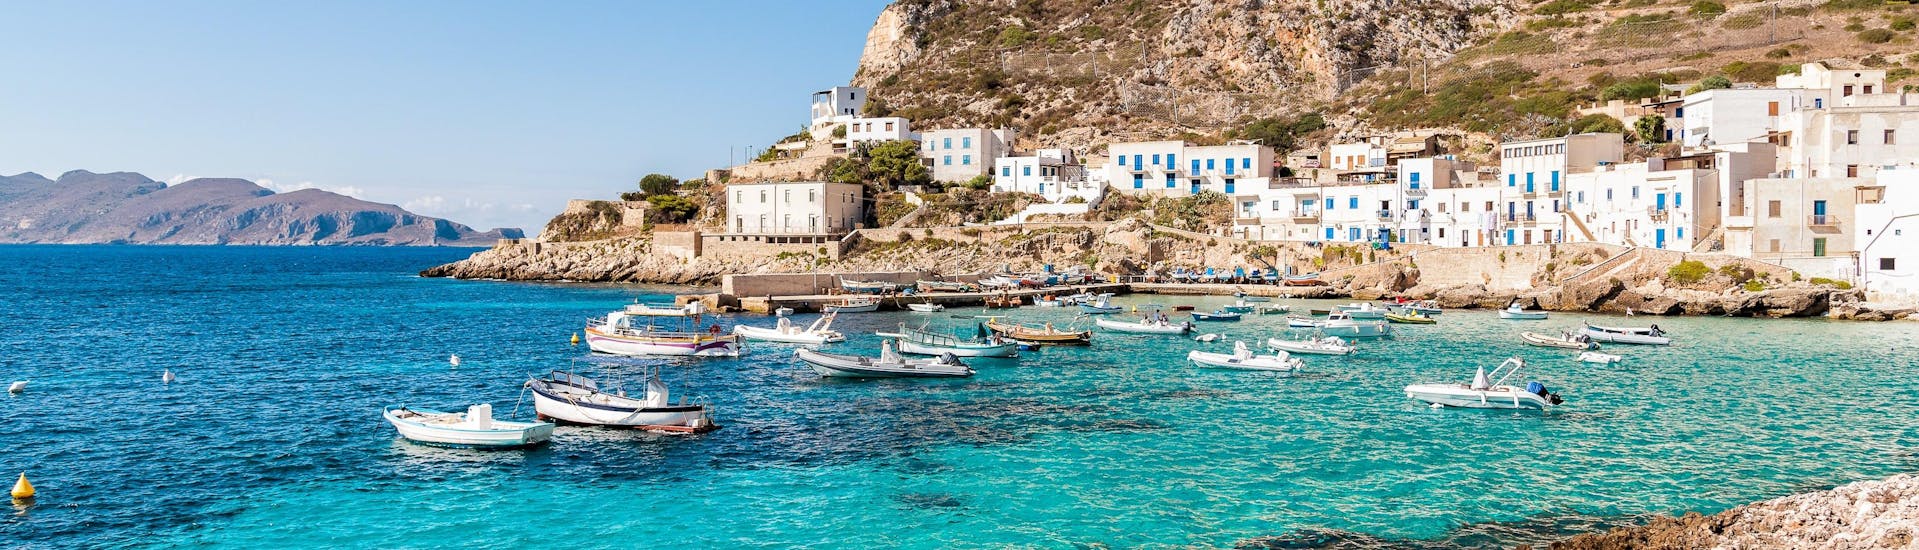 Un’immagine delle bellissime Isole Egadi, uno dei luoghi che si possono vedere durante una gita in barca in Sicilia.